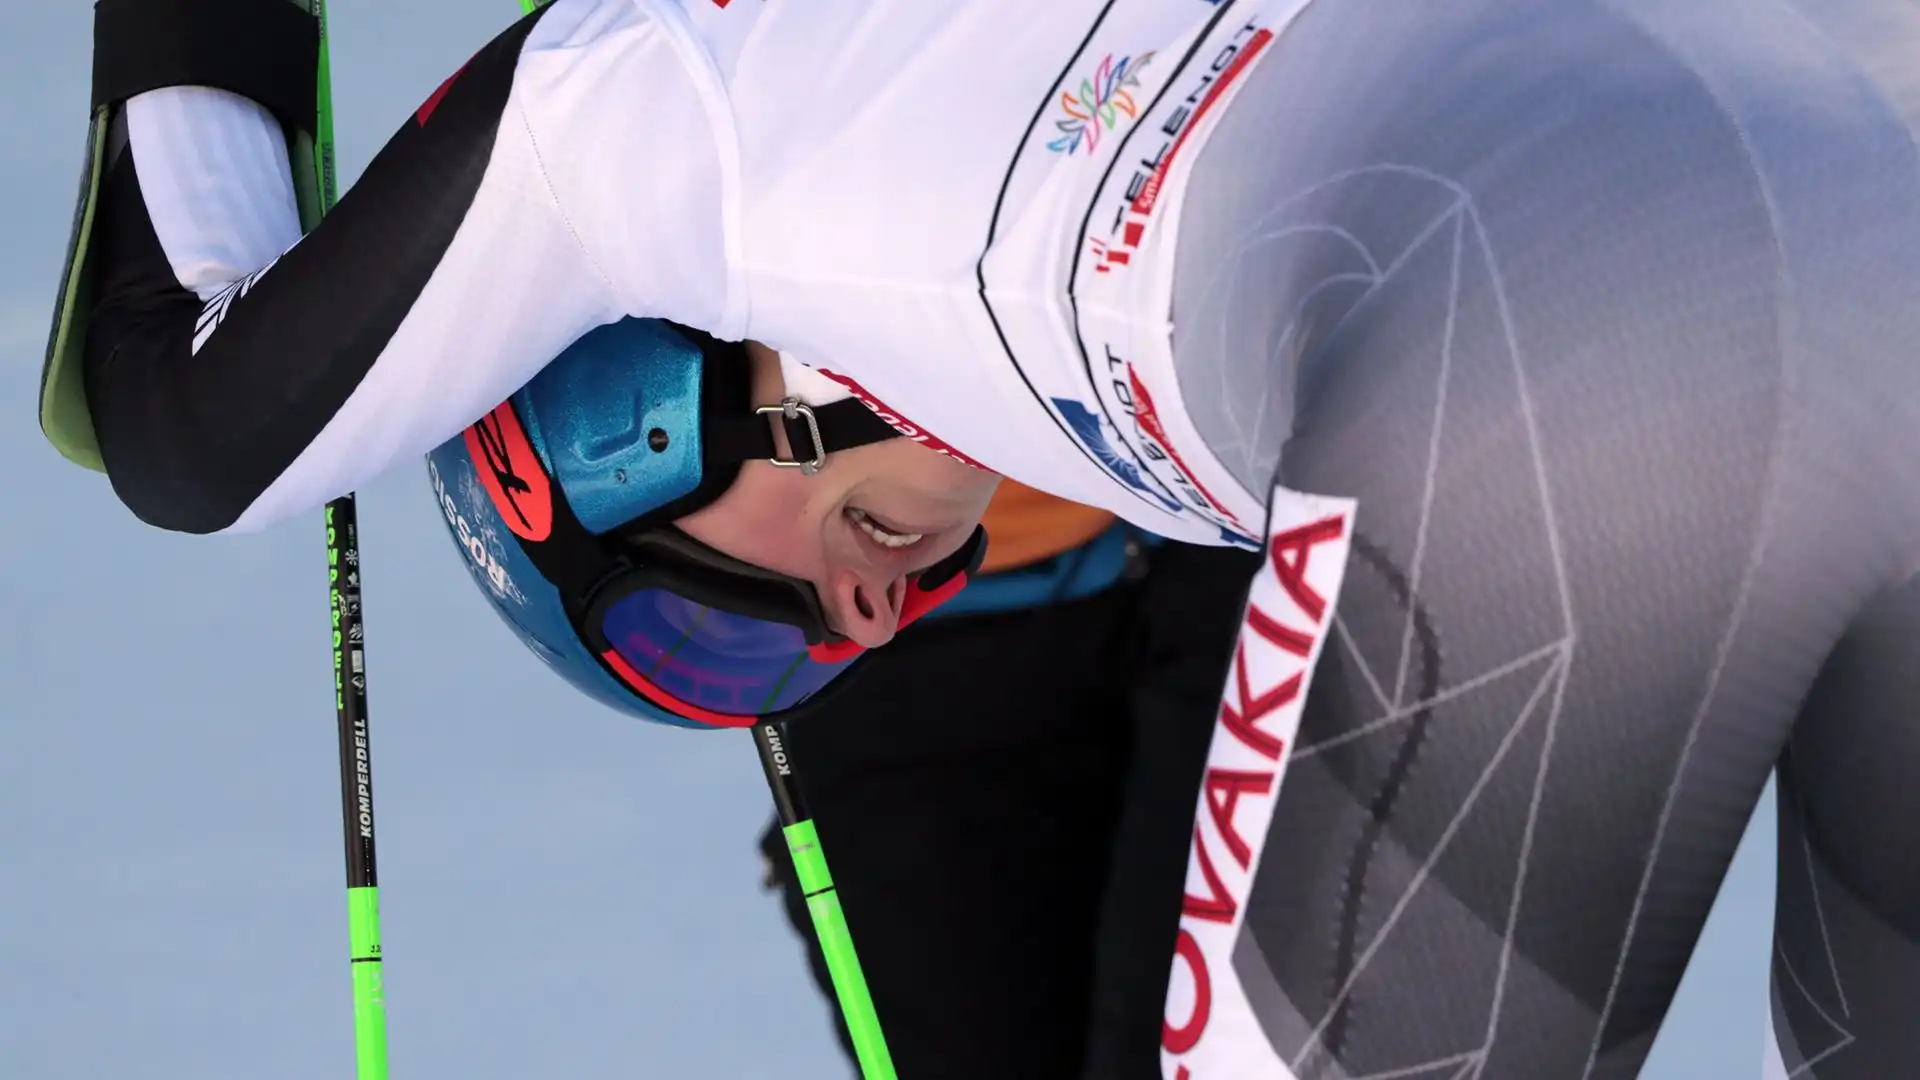 Ha vinto una medaglia d'oro nello slalom speciale alle olimpiadi invernali di Pechino 2022